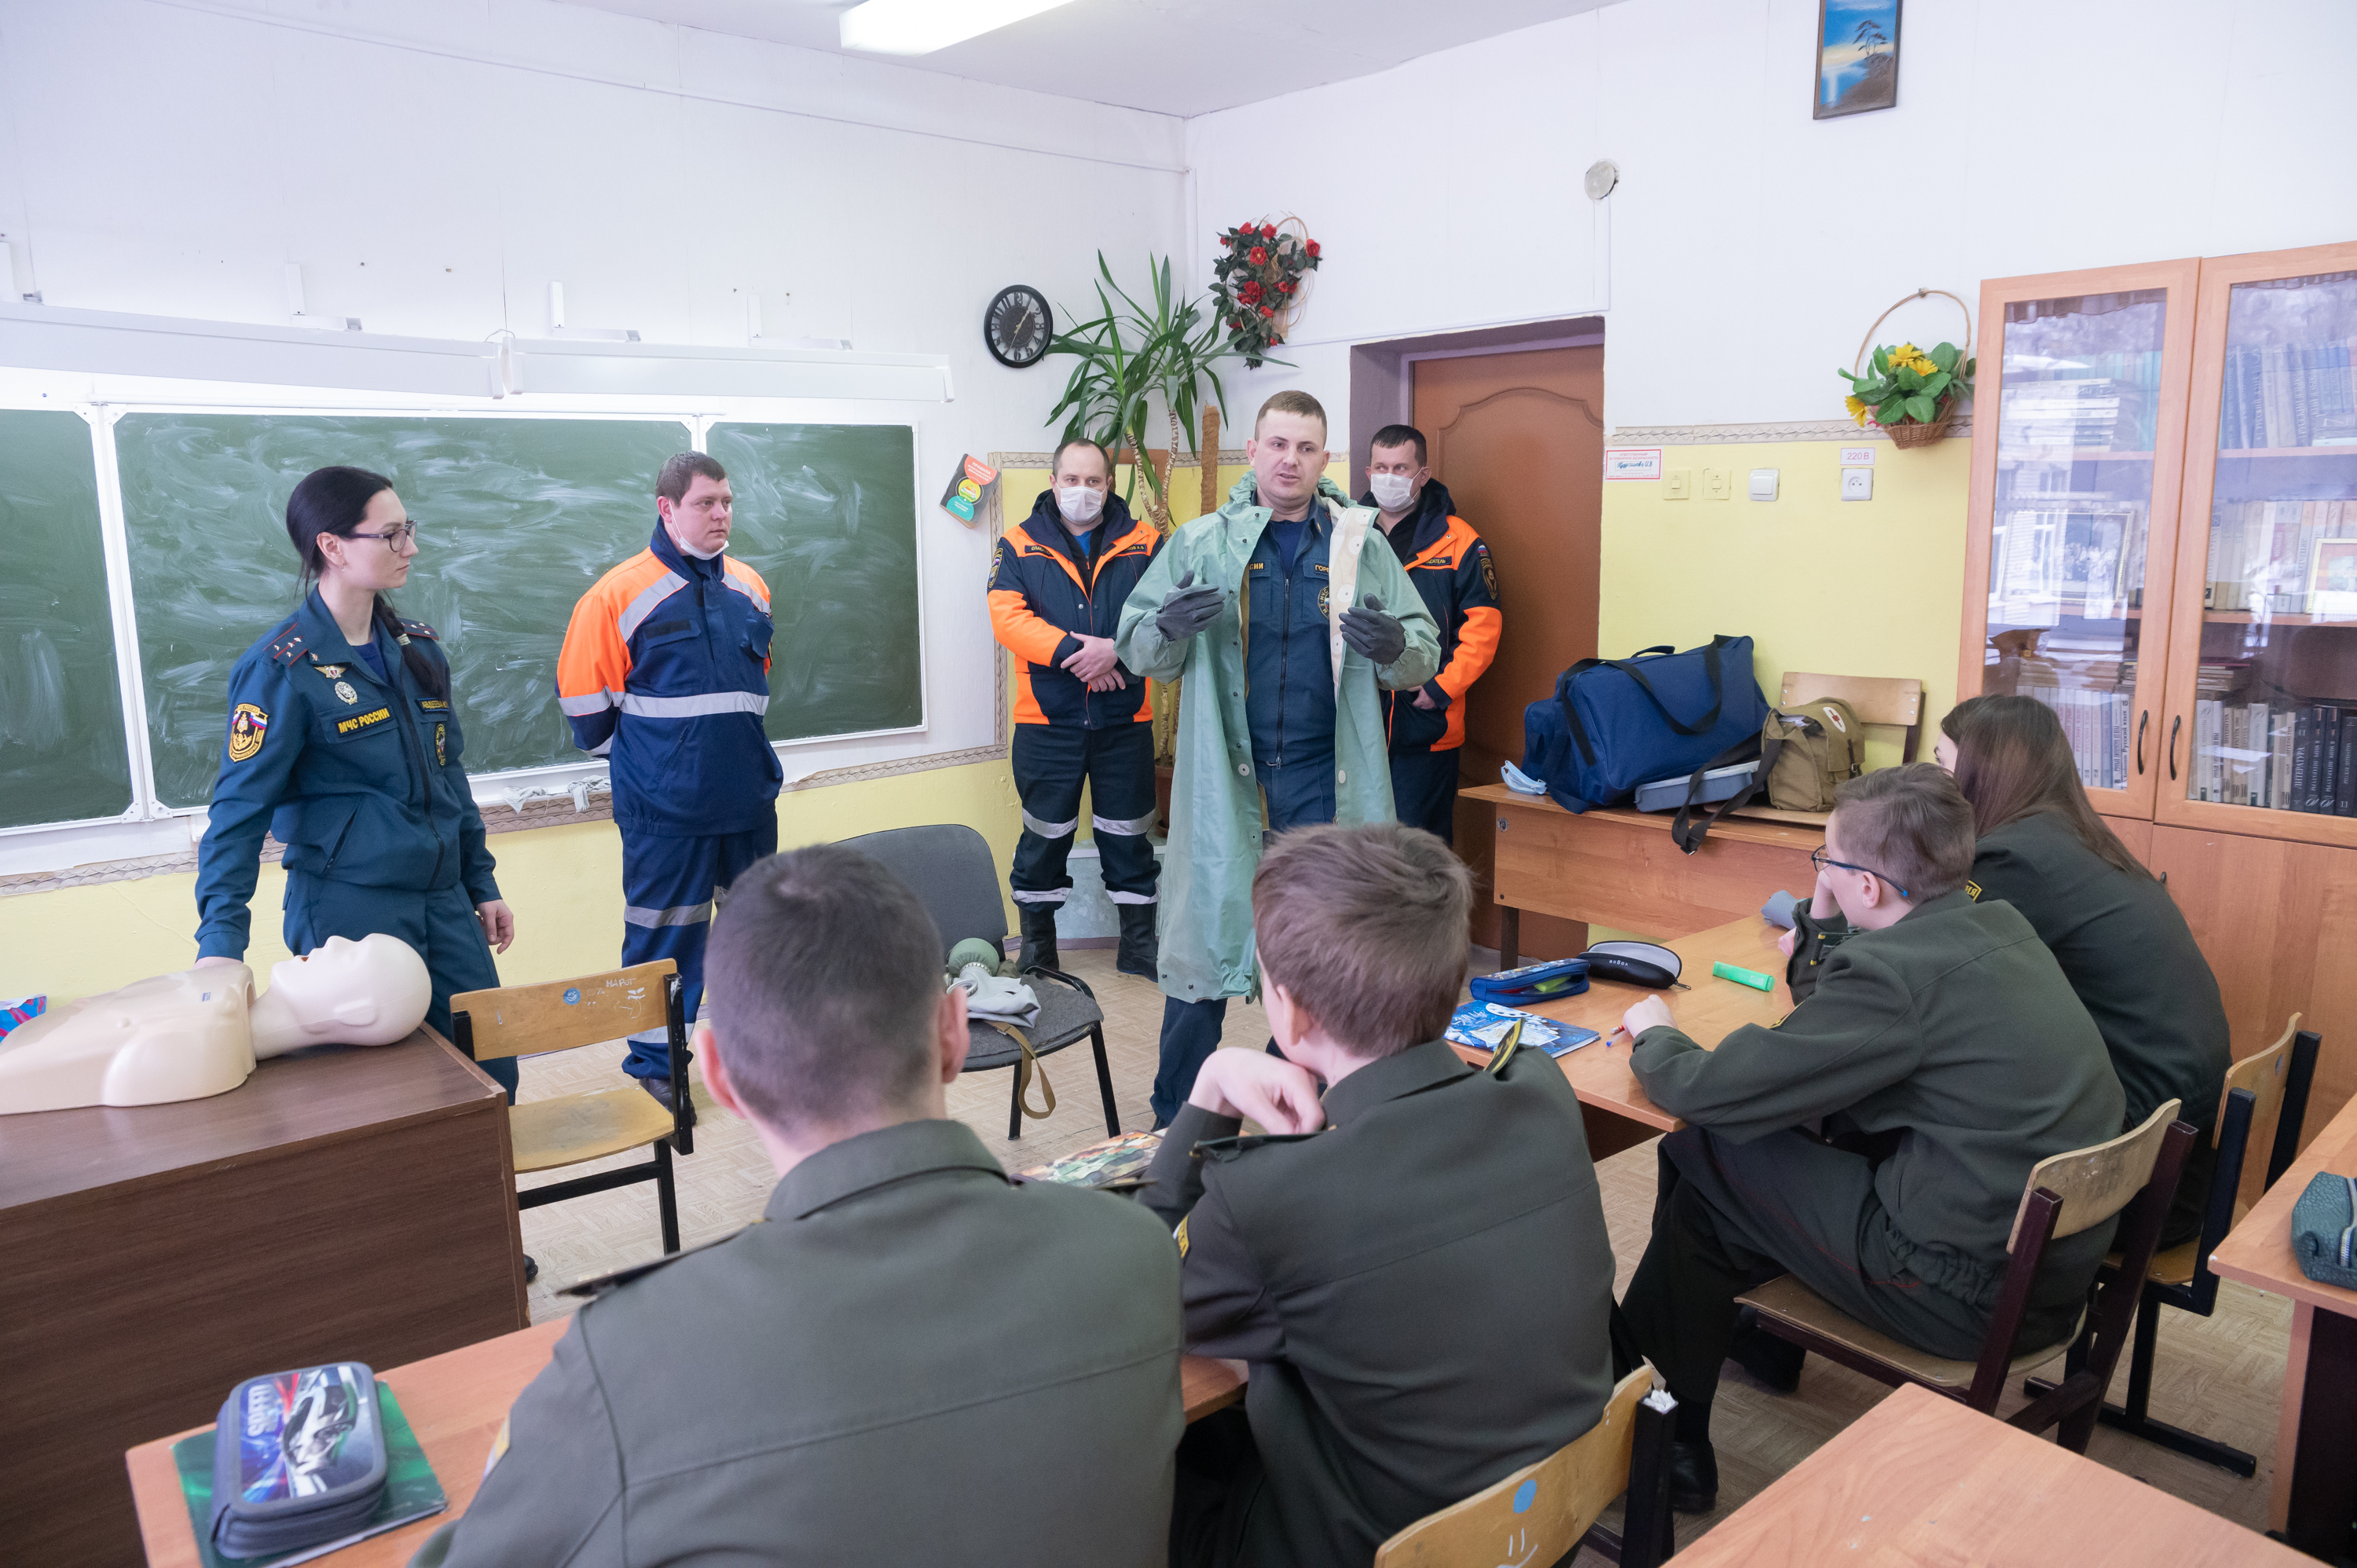 Всероссийский открытый урок обж гражданская оборона